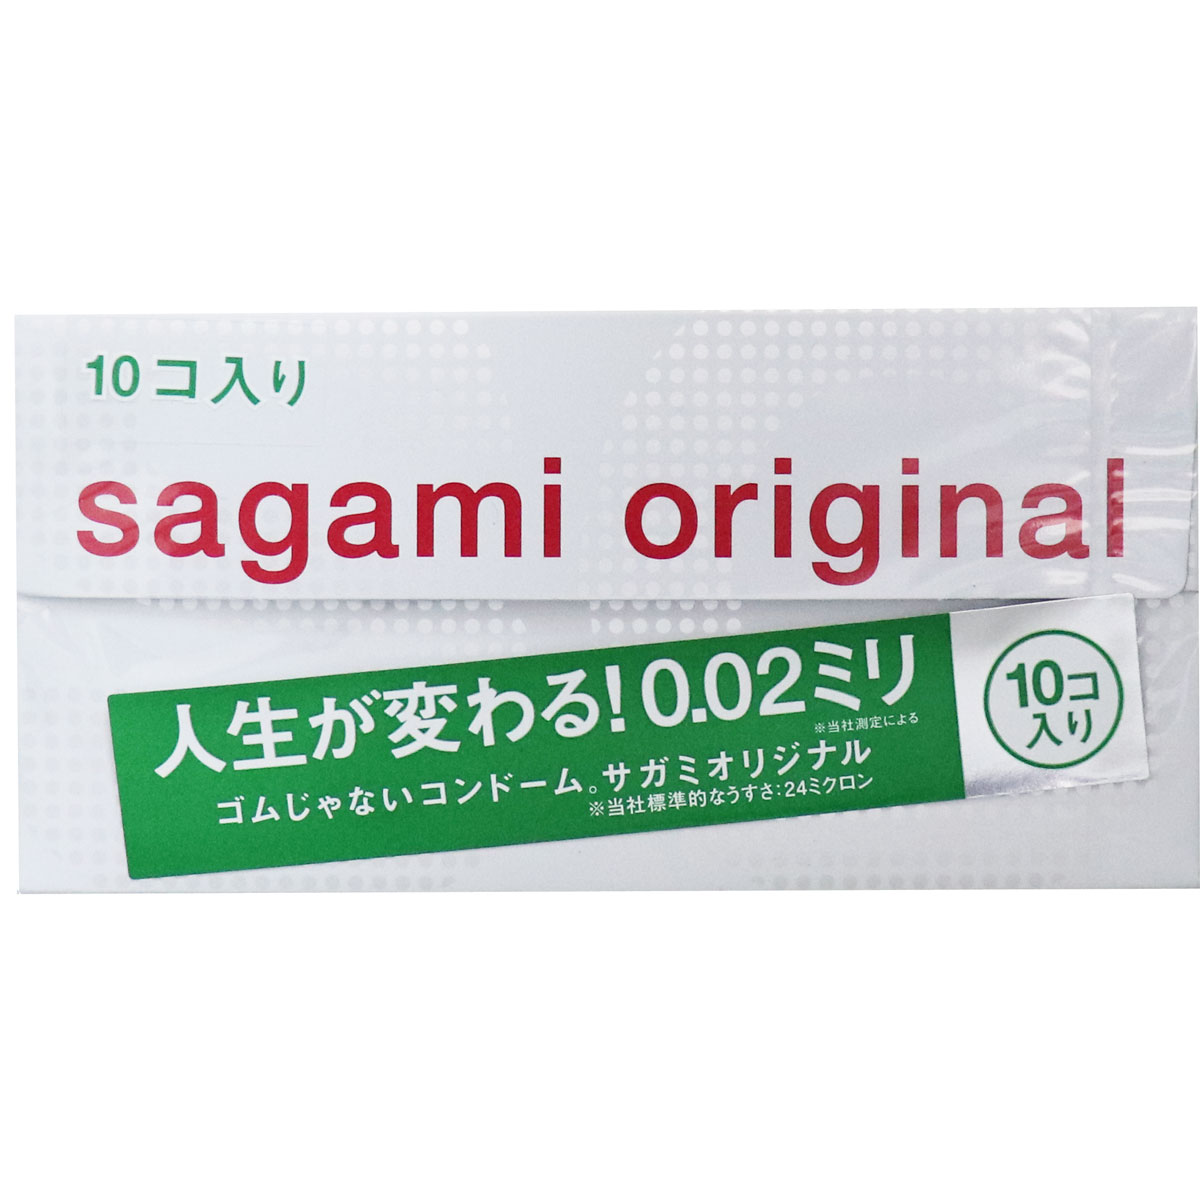 Sagami Original 0.02 Condom 10pcs . Free Shipping from Japan - AllFromJapan